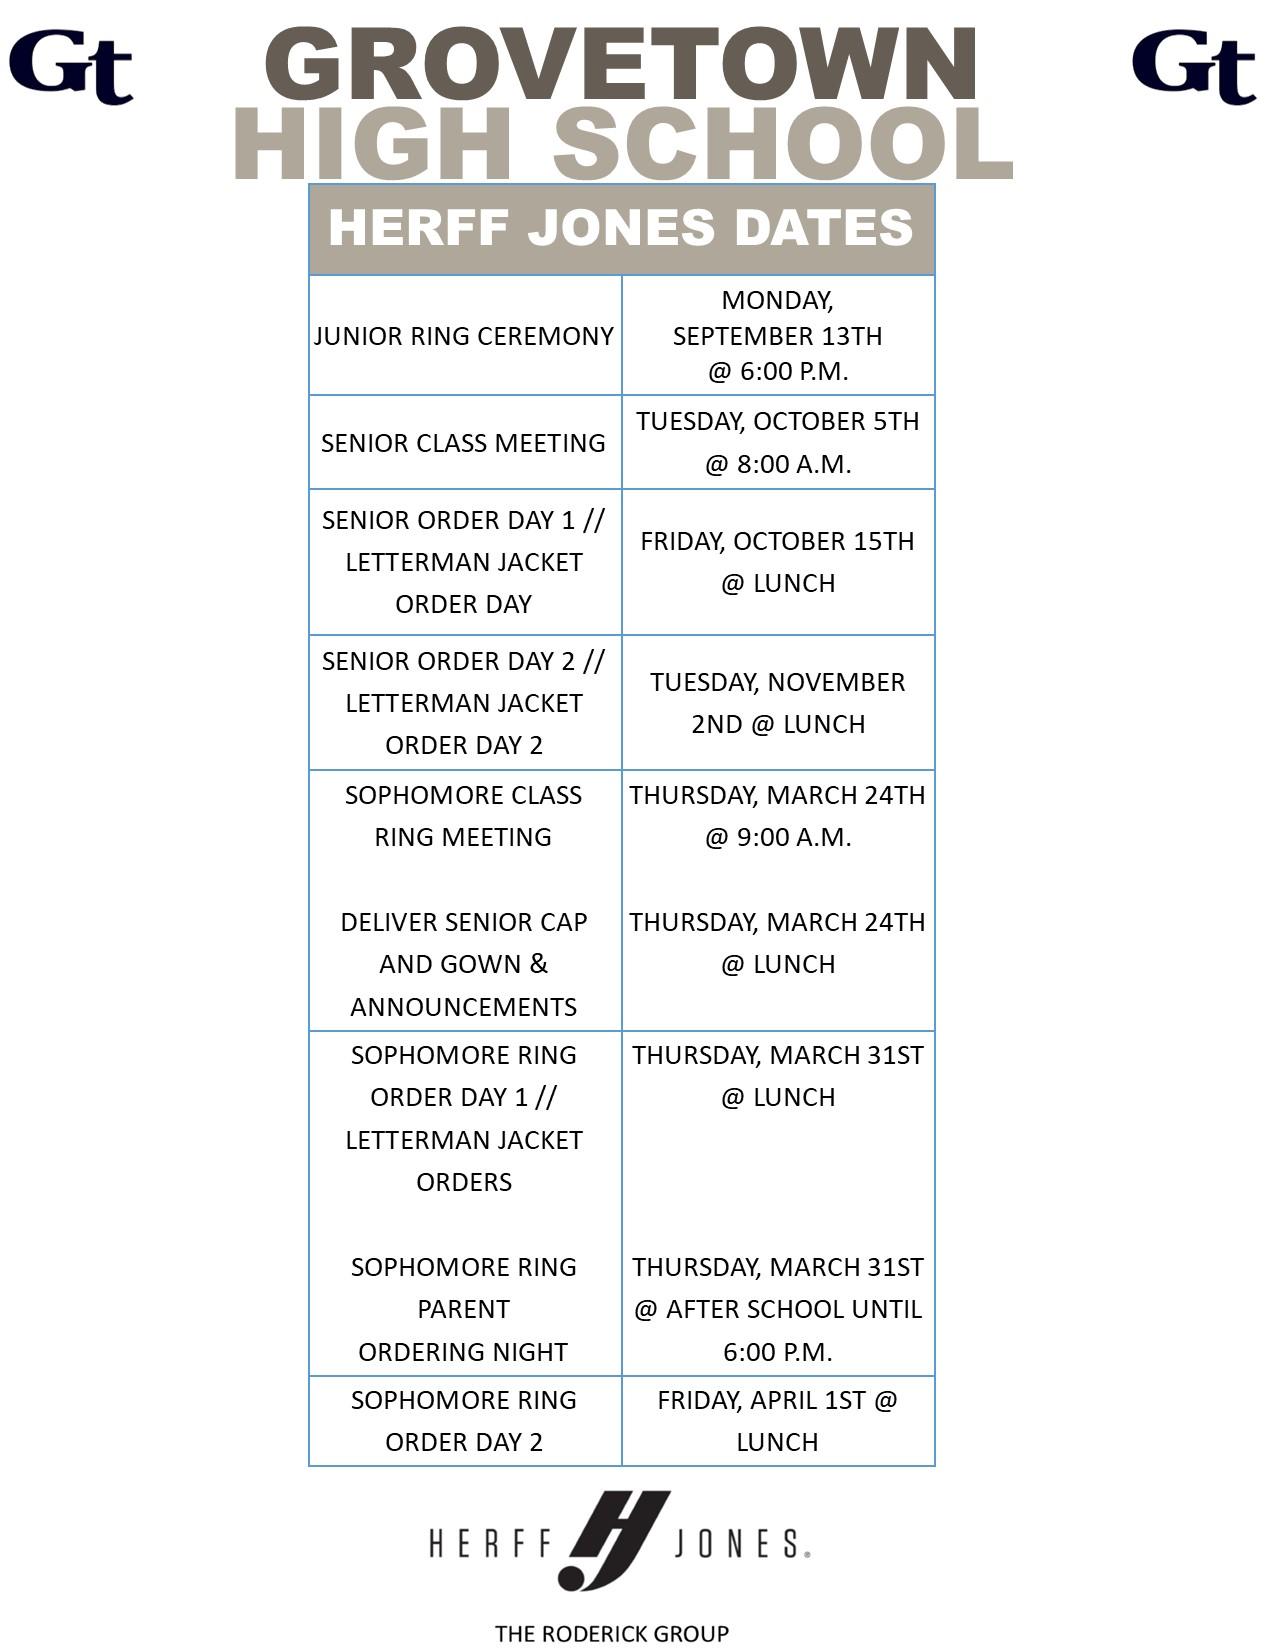 Herff Jones Dates for Grovetown High School